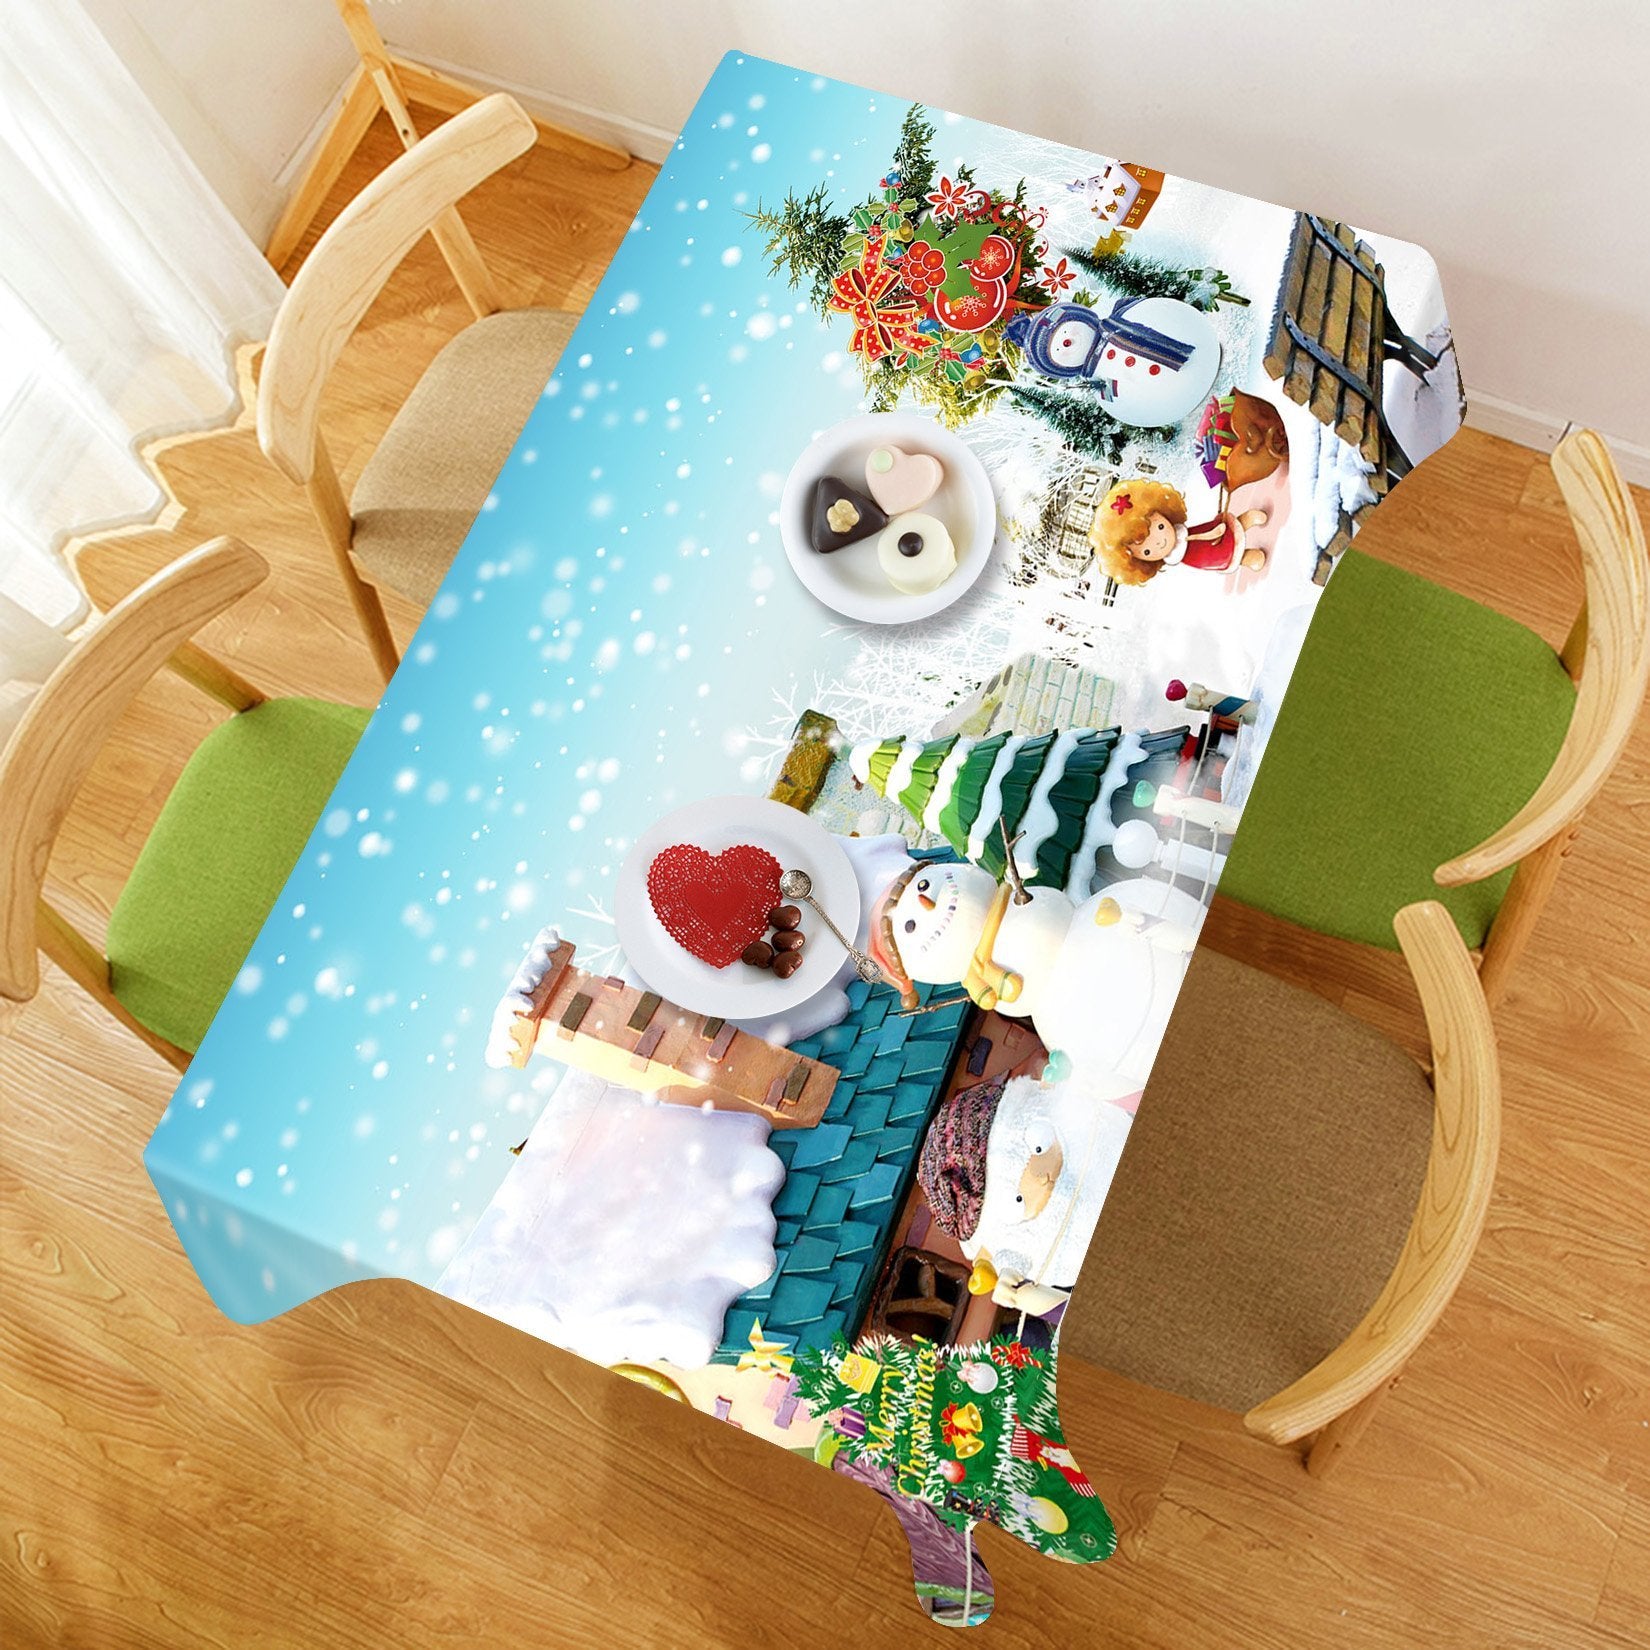 3D Christmas Tree Decoration 11 Tablecloths Tablecloths AJ Creativity Home 